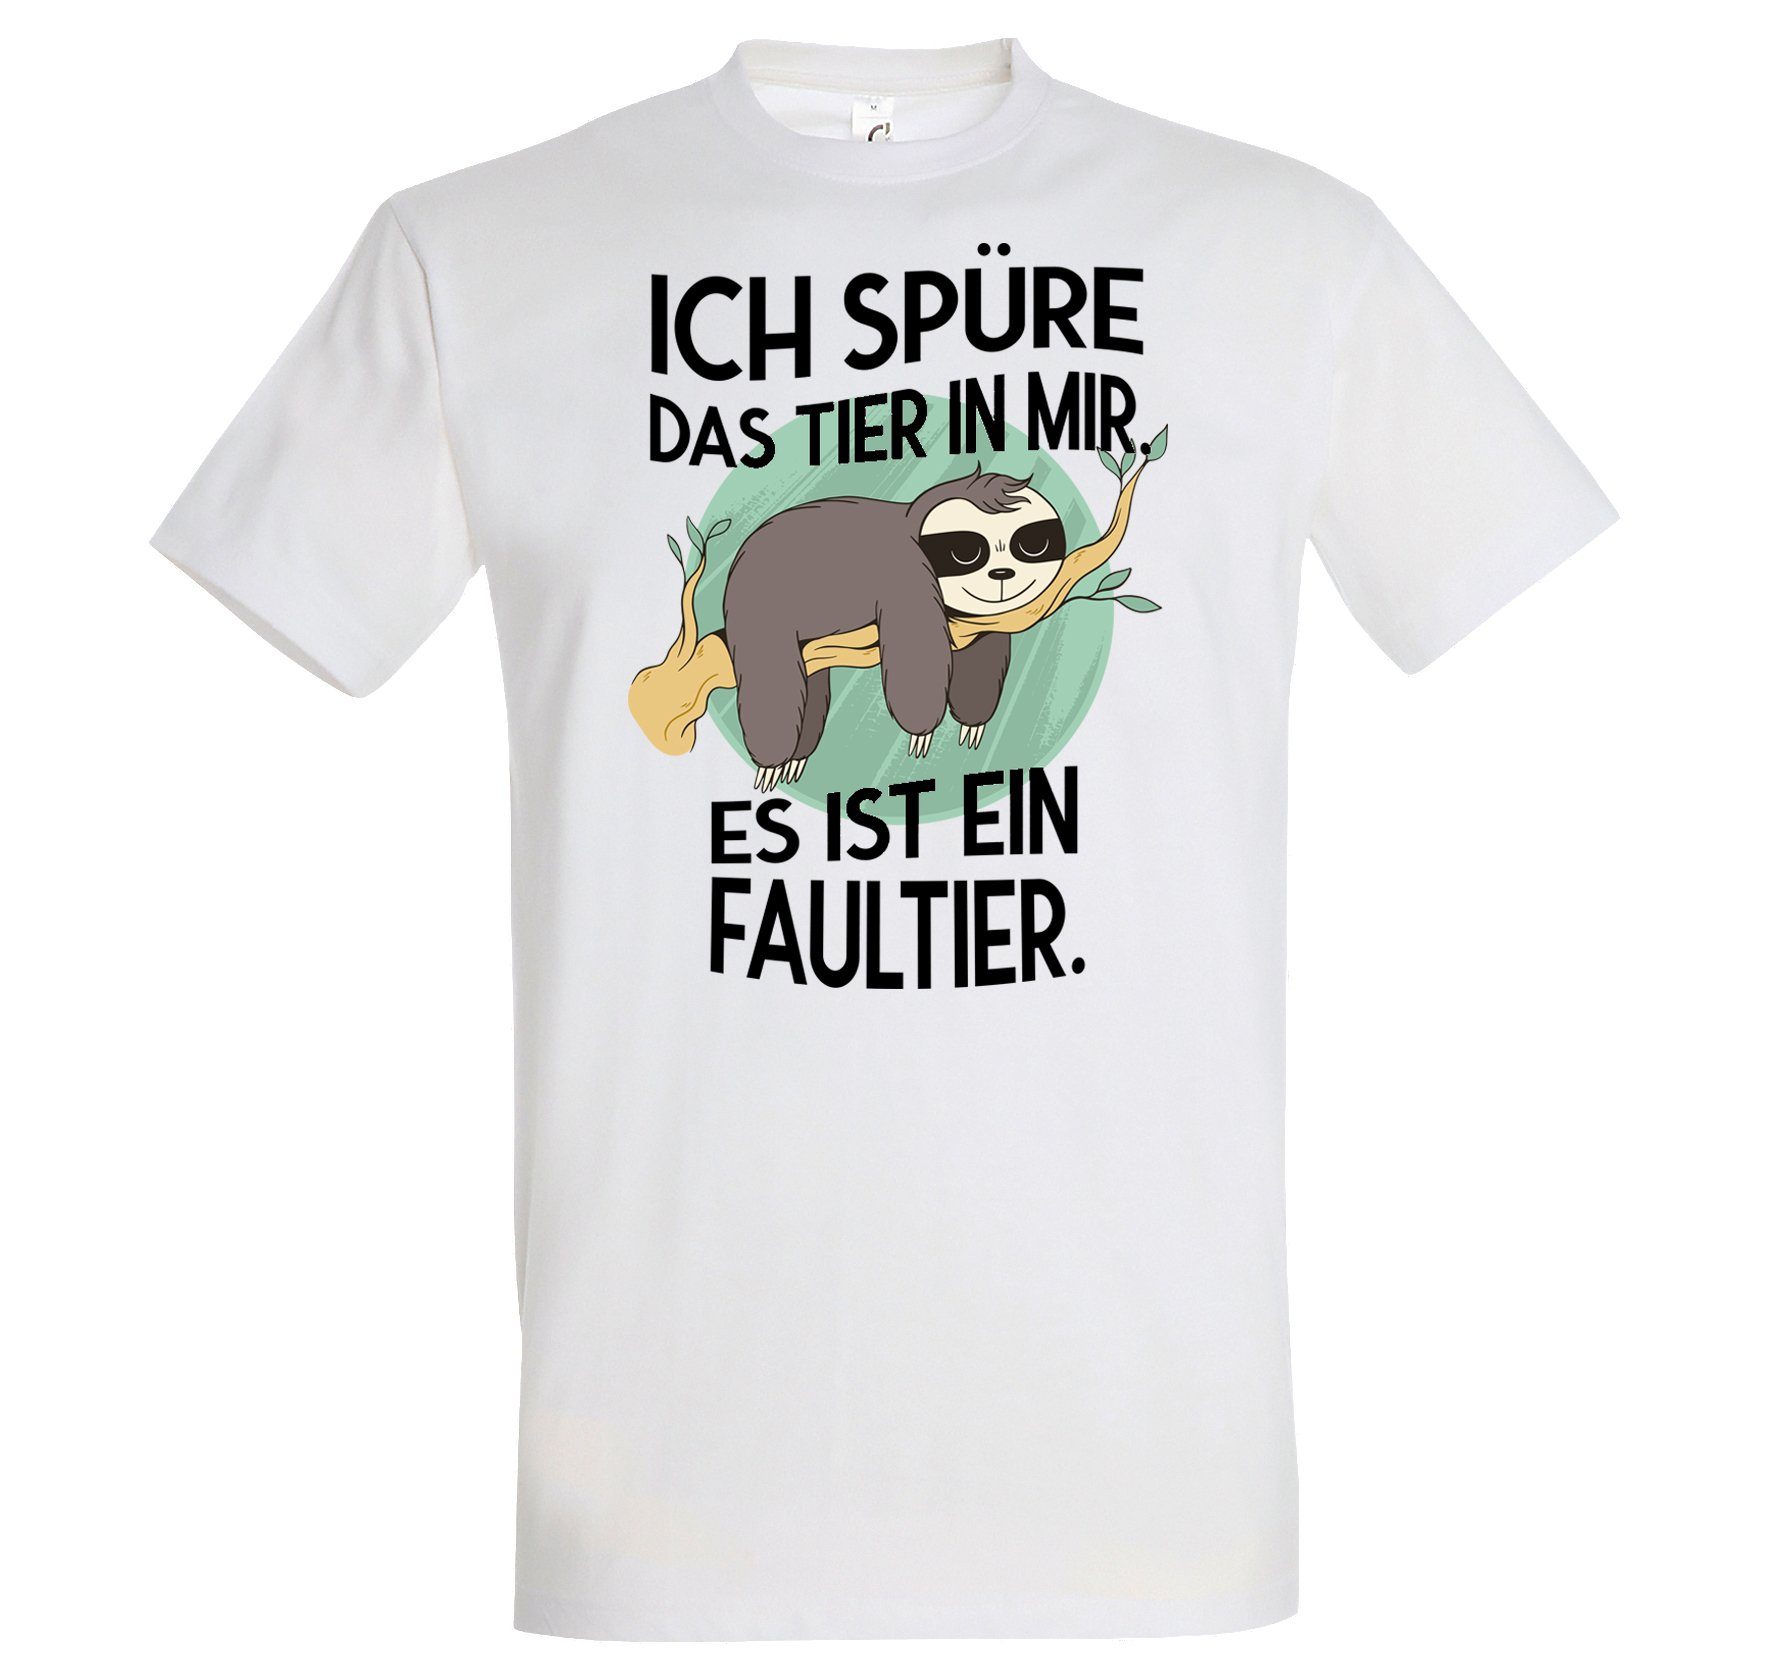 Youth Designz T-Shirt Das Tier mir Herren Weiß in lustigem Frontprint Faultier T-Shirt mit